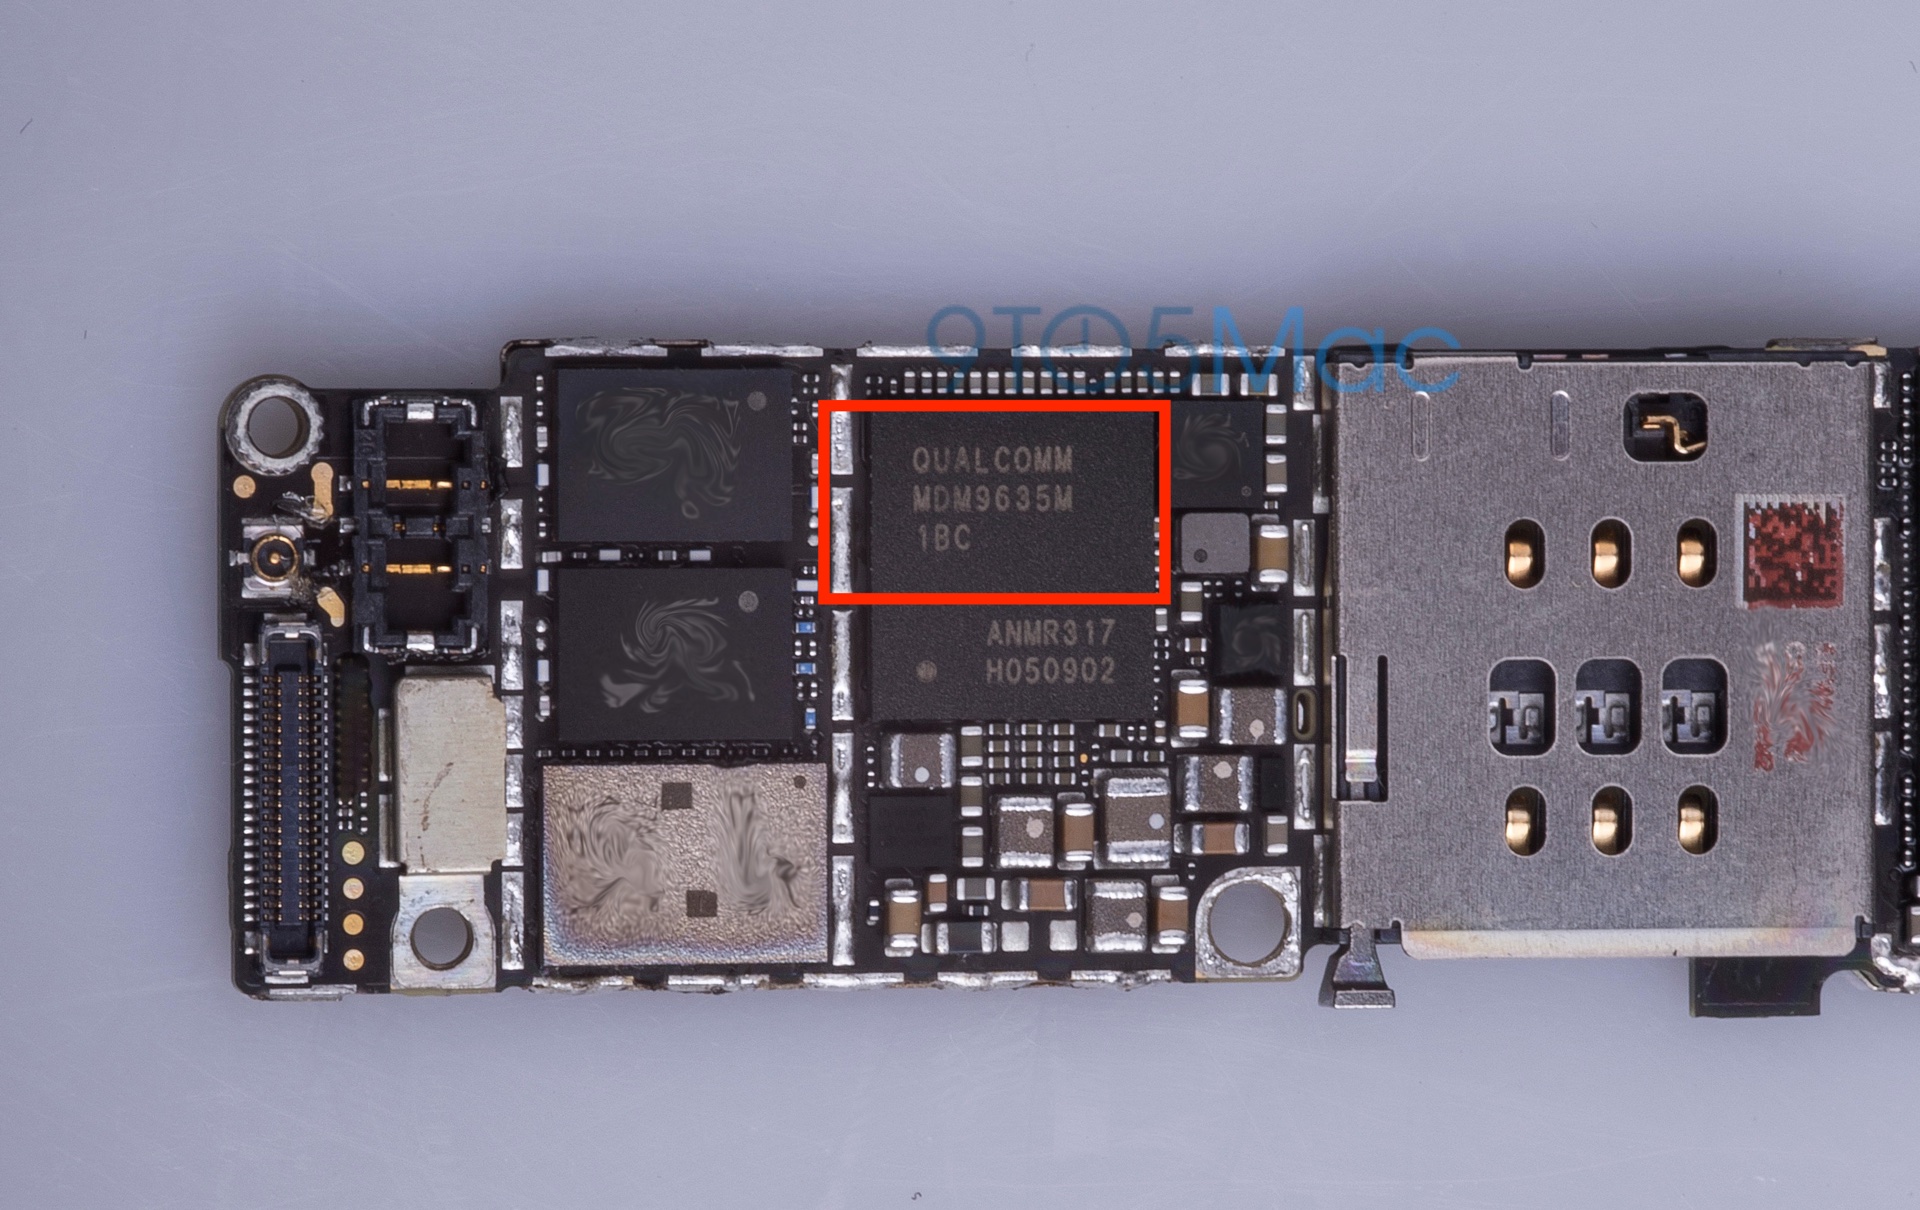 Novo chip da Qualcomm no suposto "iPhone 6s"